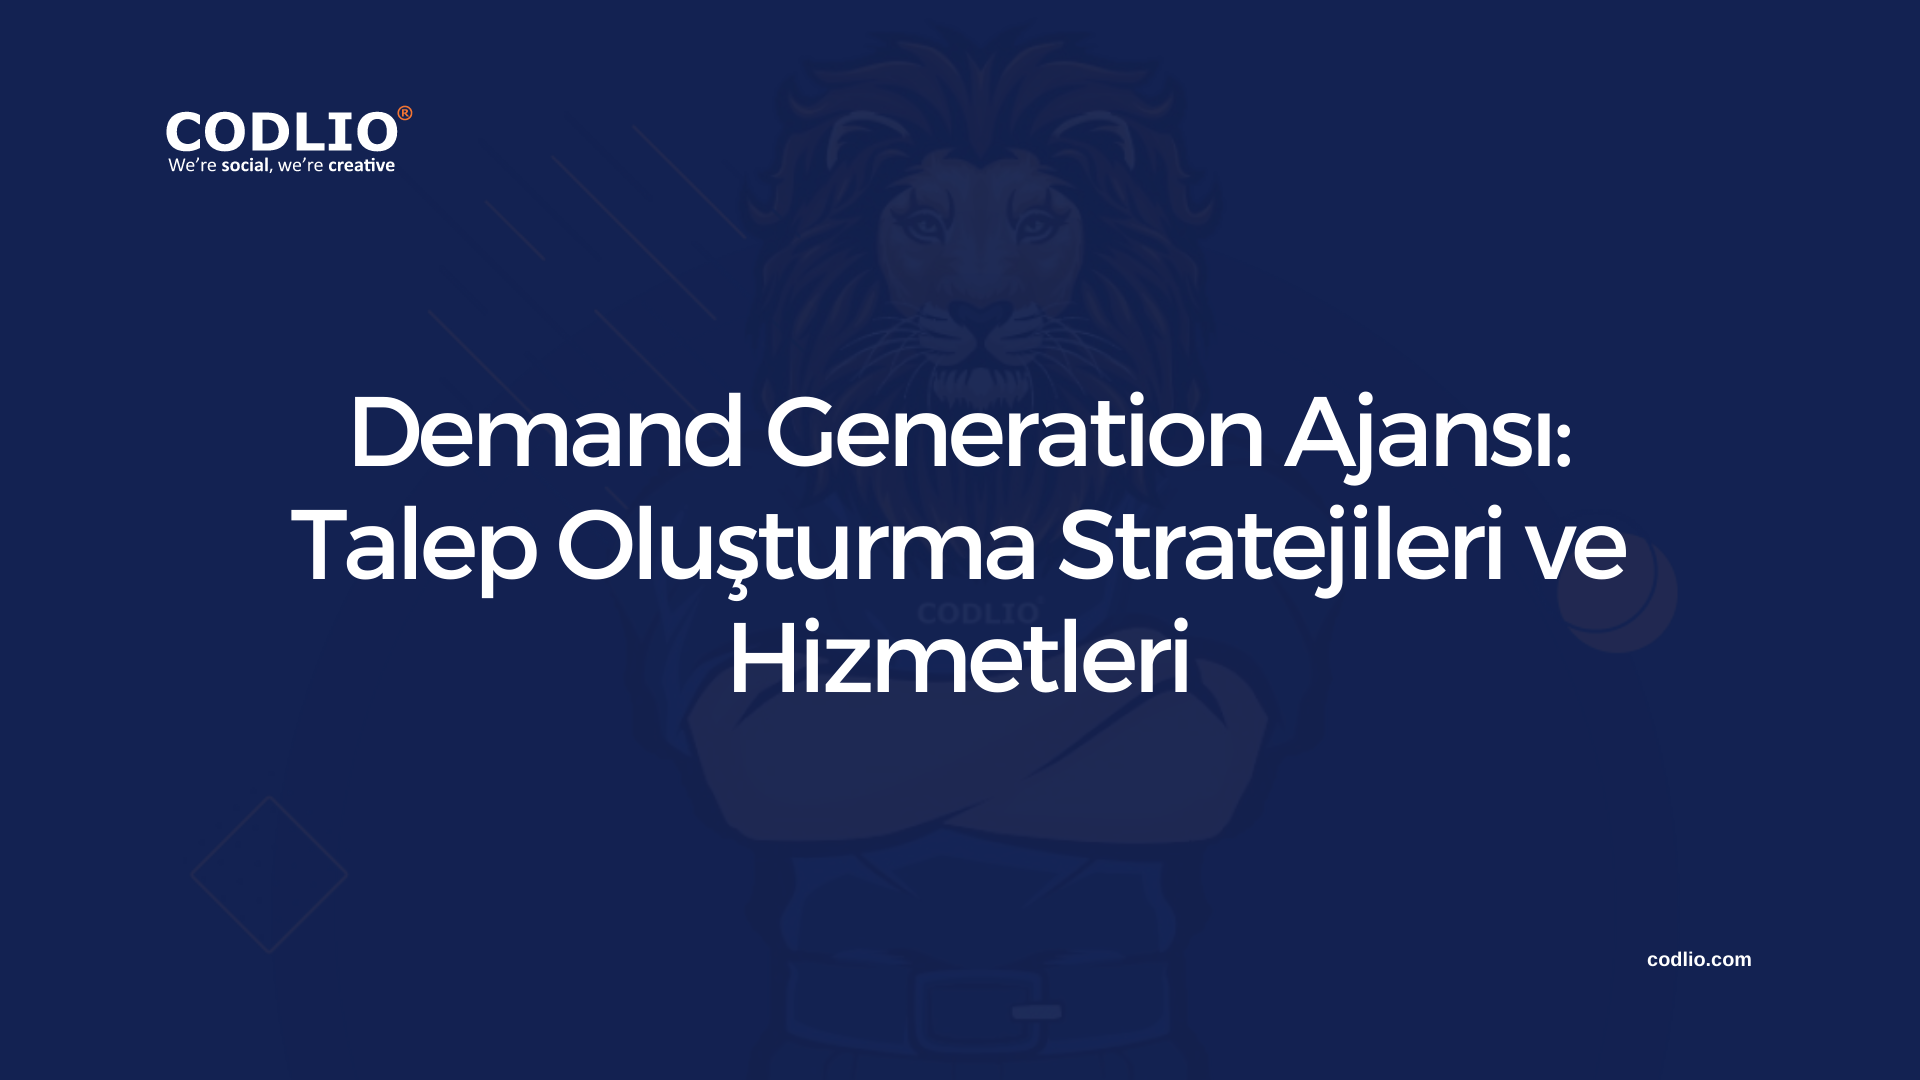 Demand Generation Ajansı: Talep Oluşturma Stratejileri ve Hizmetleri